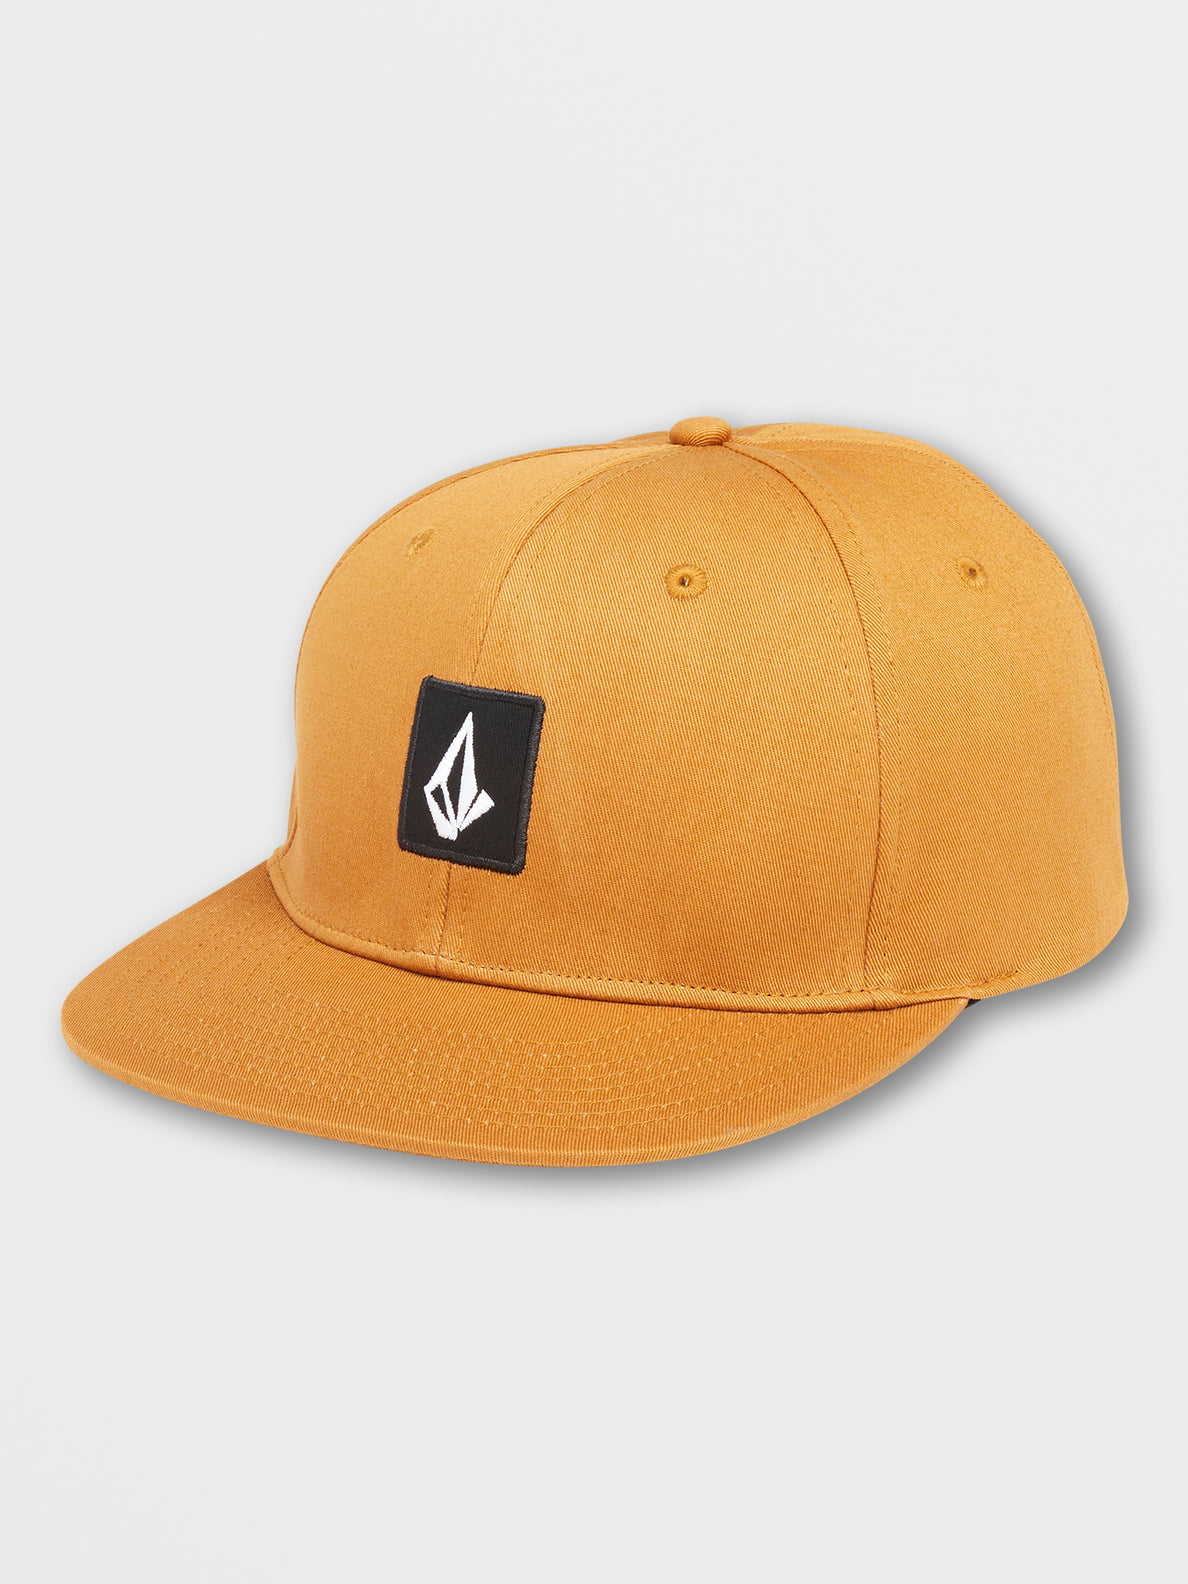 V-Square Snapback 2 Hat - Golden Brown